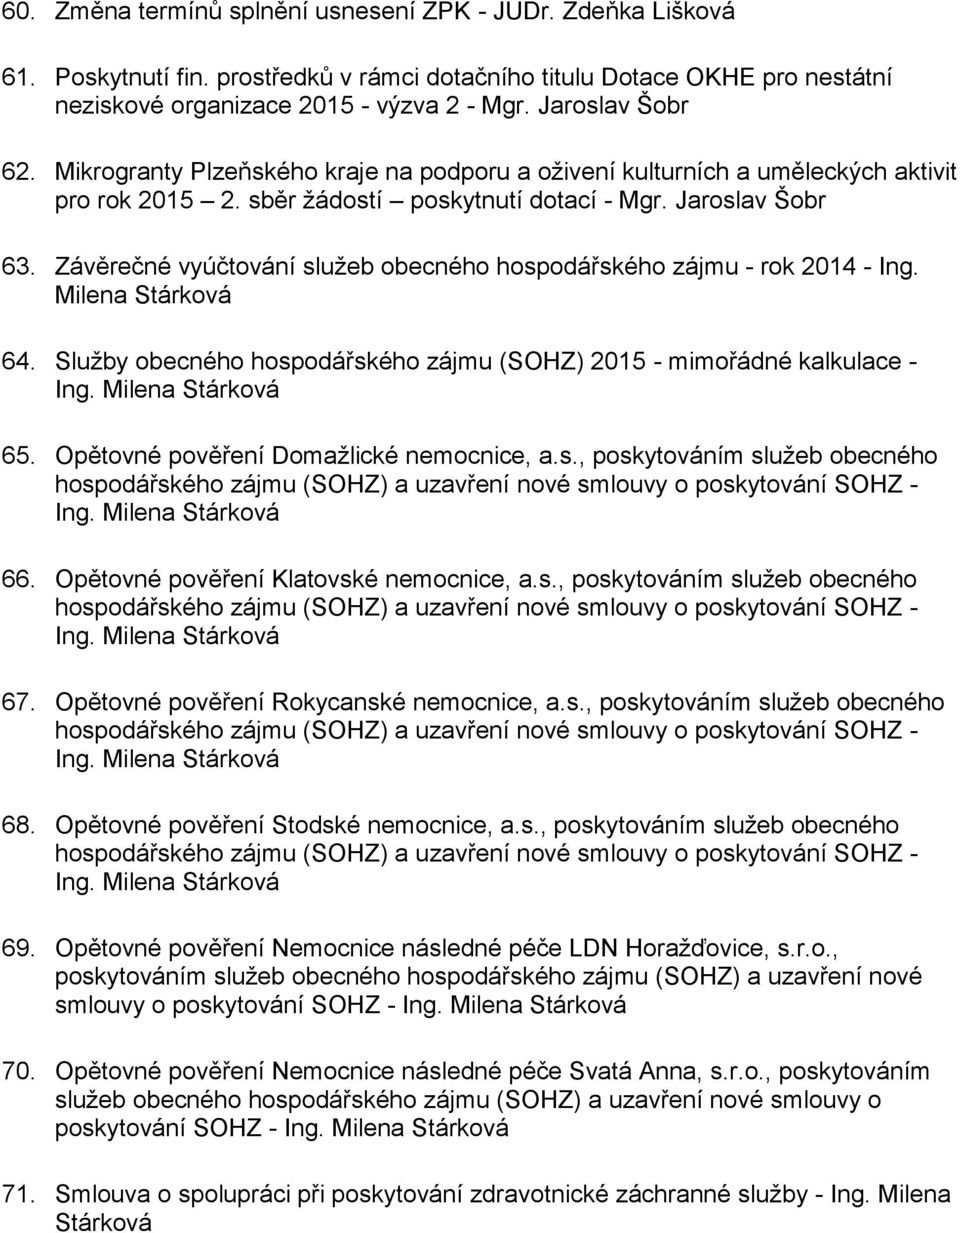 Závěrečné vyúčtování služeb obecného hospodářského zájmu - rok 2014 - Ing. Milena Stárková 64. Služby obecného hospodářského zájmu (SOHZ) 2015 - mimořádné kalkulace - 65.